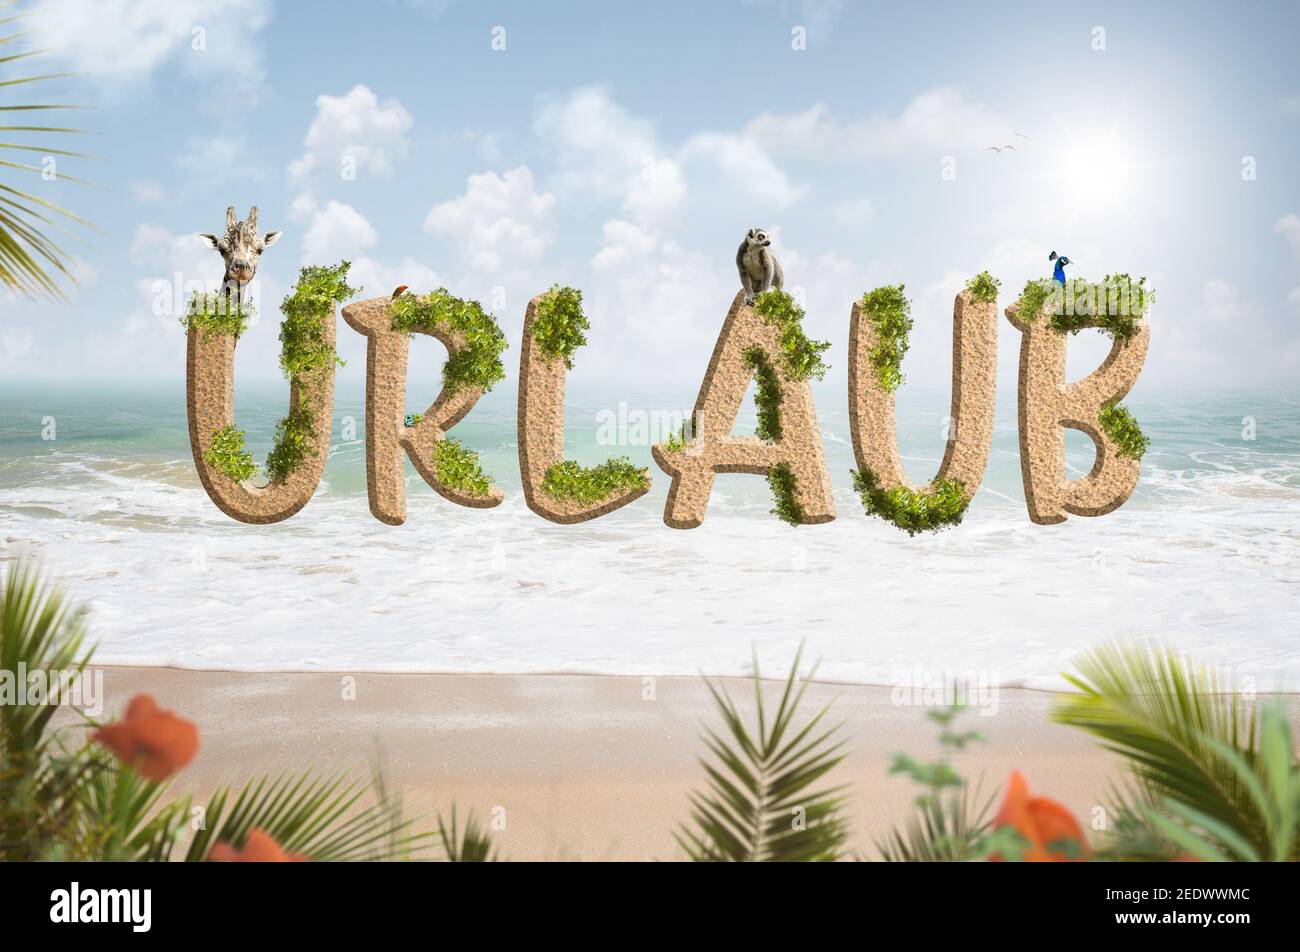 Letras 'Urlaub' (alemán de vacaciones) sobre un fondo de playa tropical Foto de stock